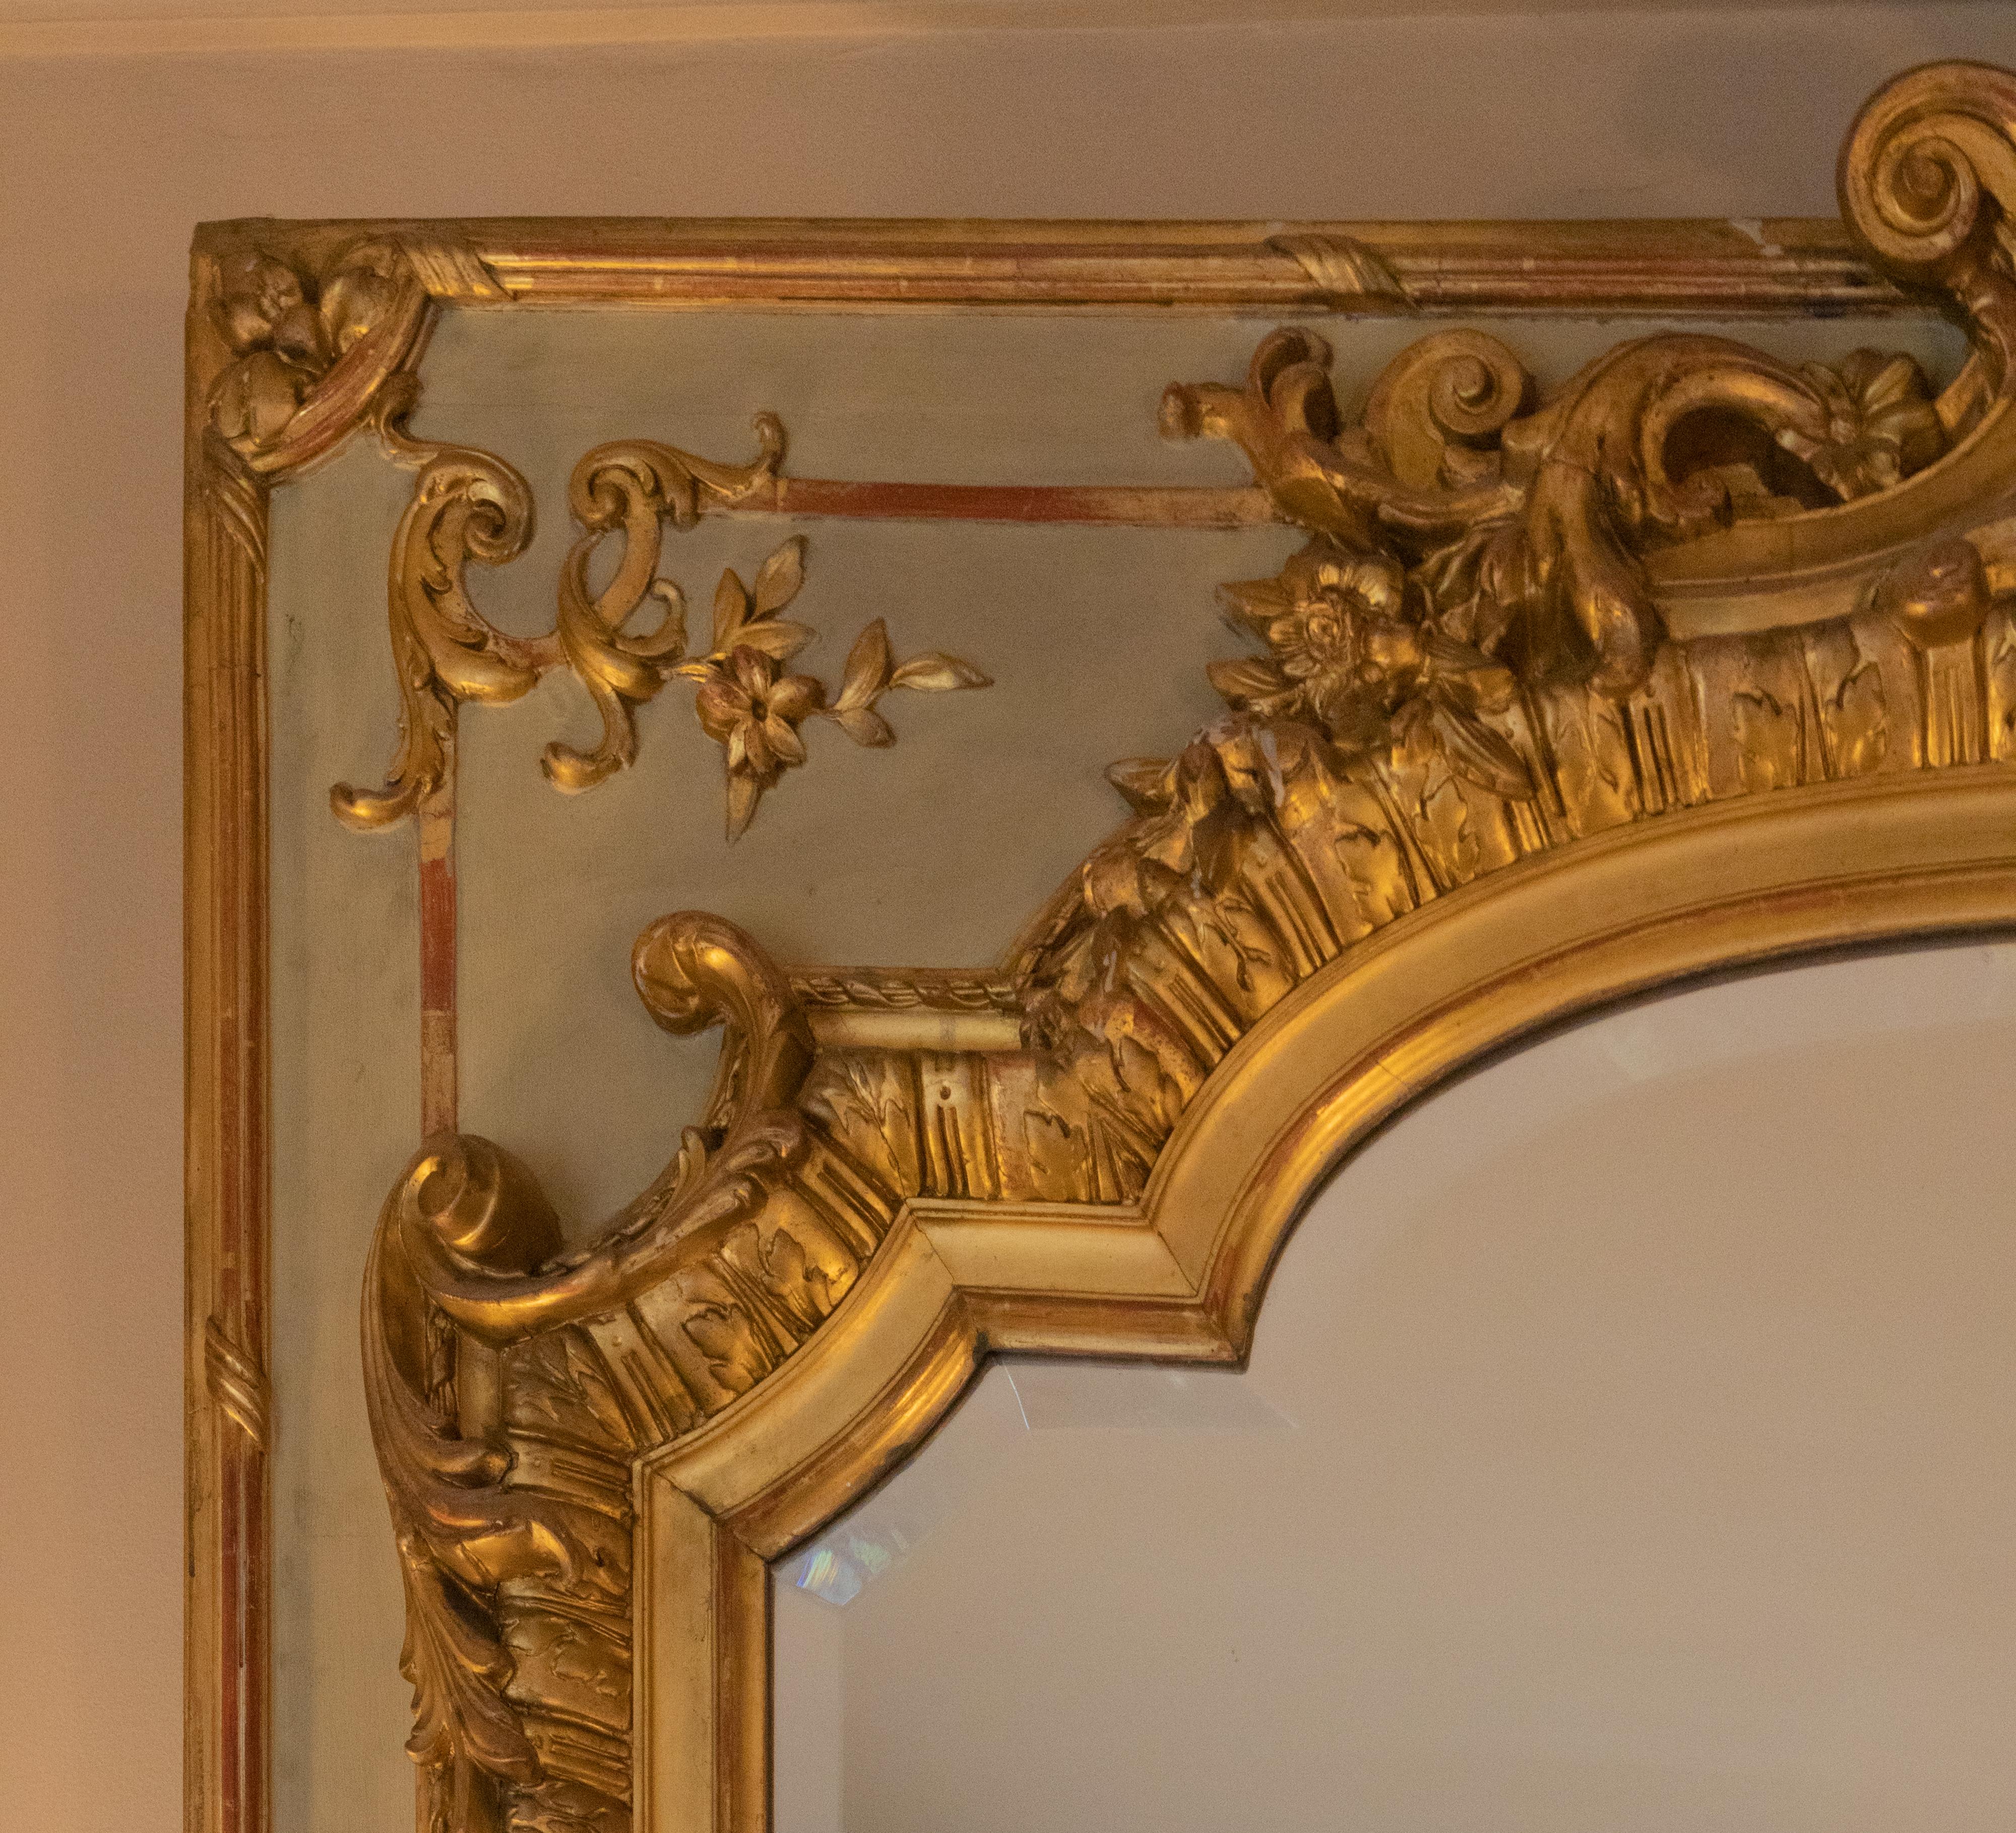 Ein schöner Spiegel von Tremeau aus dem 19. Jahrhundert, bemalt und mit vergoldeter Parzellierung, rechteckiger Spiegel in einem grünlich-grauen, rechteckigen Rahmen mit Stuckdekoration in Blattgold, Rokoko-Motiven und Reliefs wie gerollten